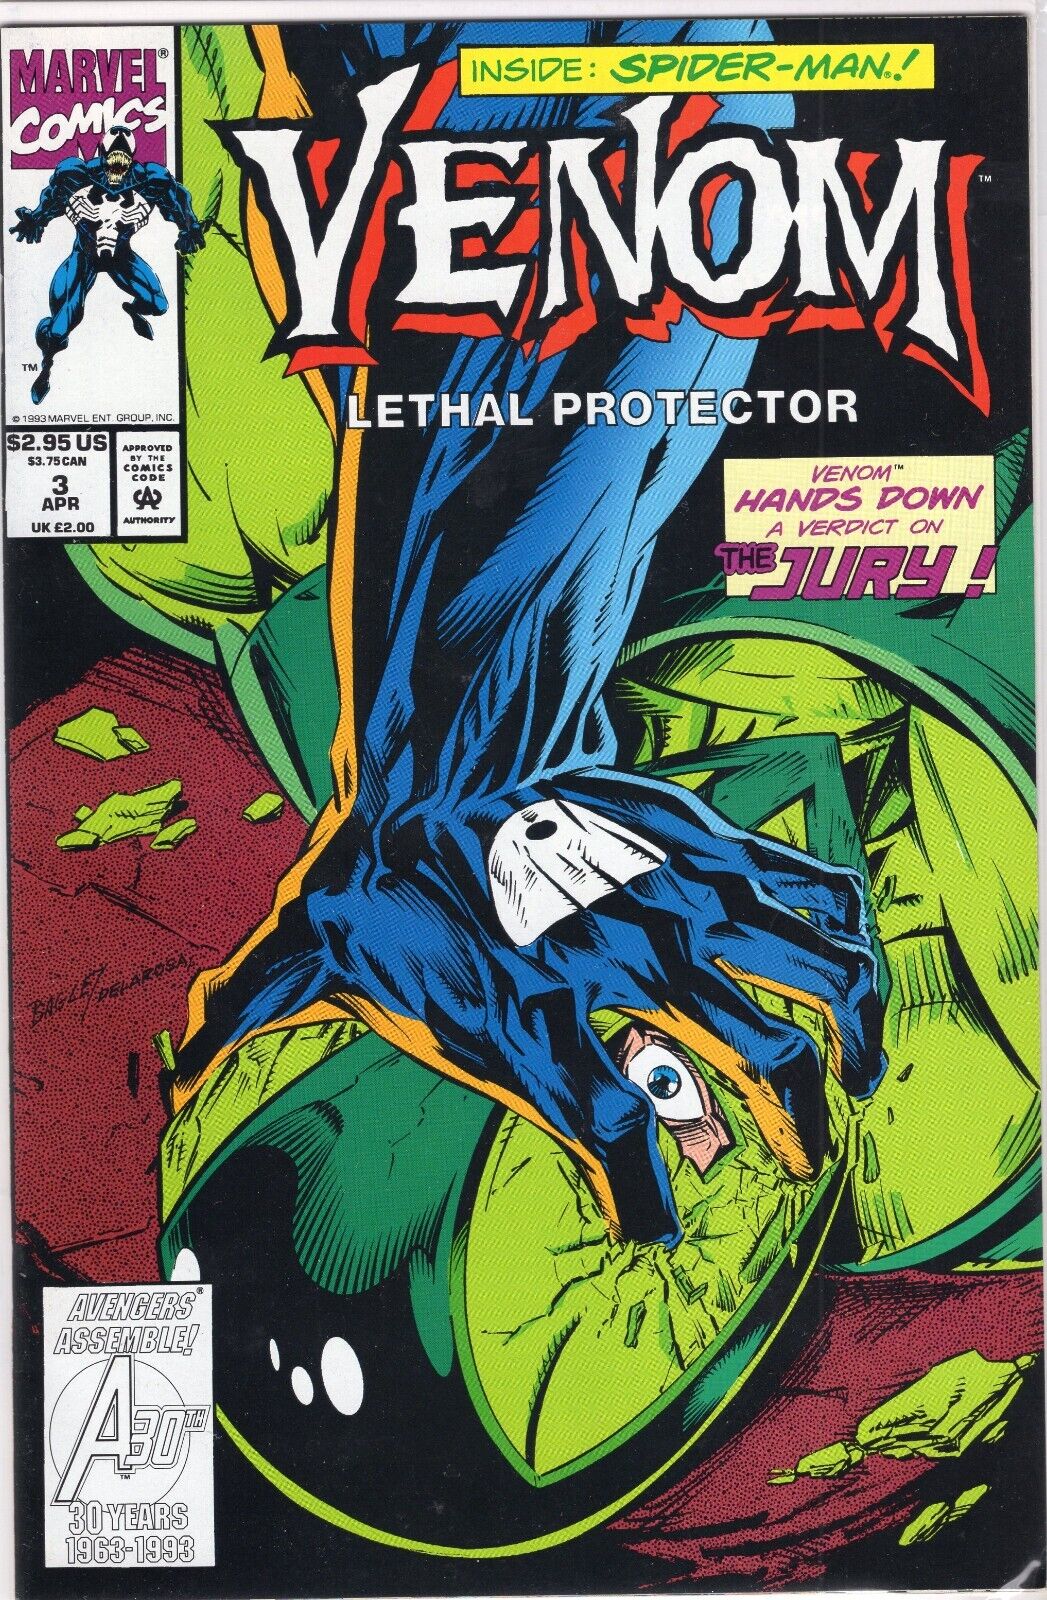 Venom Lethal Protector #3 Spider-man (MarvelComics Apr 1993) Mark Bagley Art